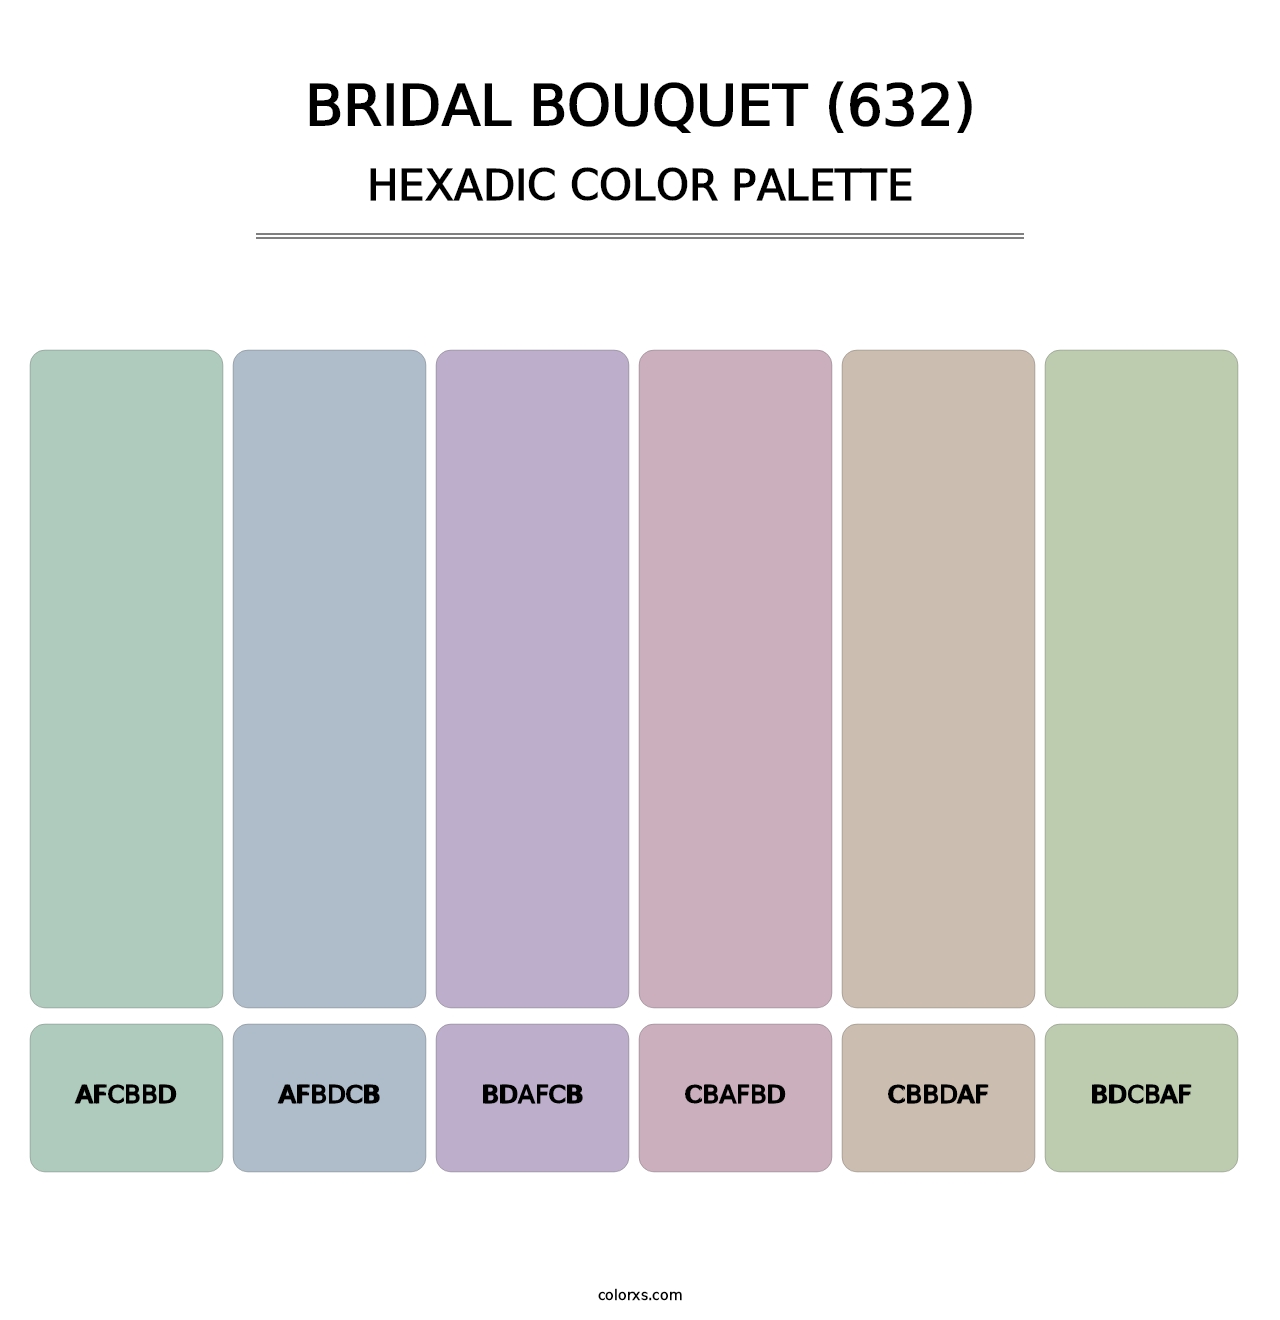 Bridal Bouquet (632) - Hexadic Color Palette